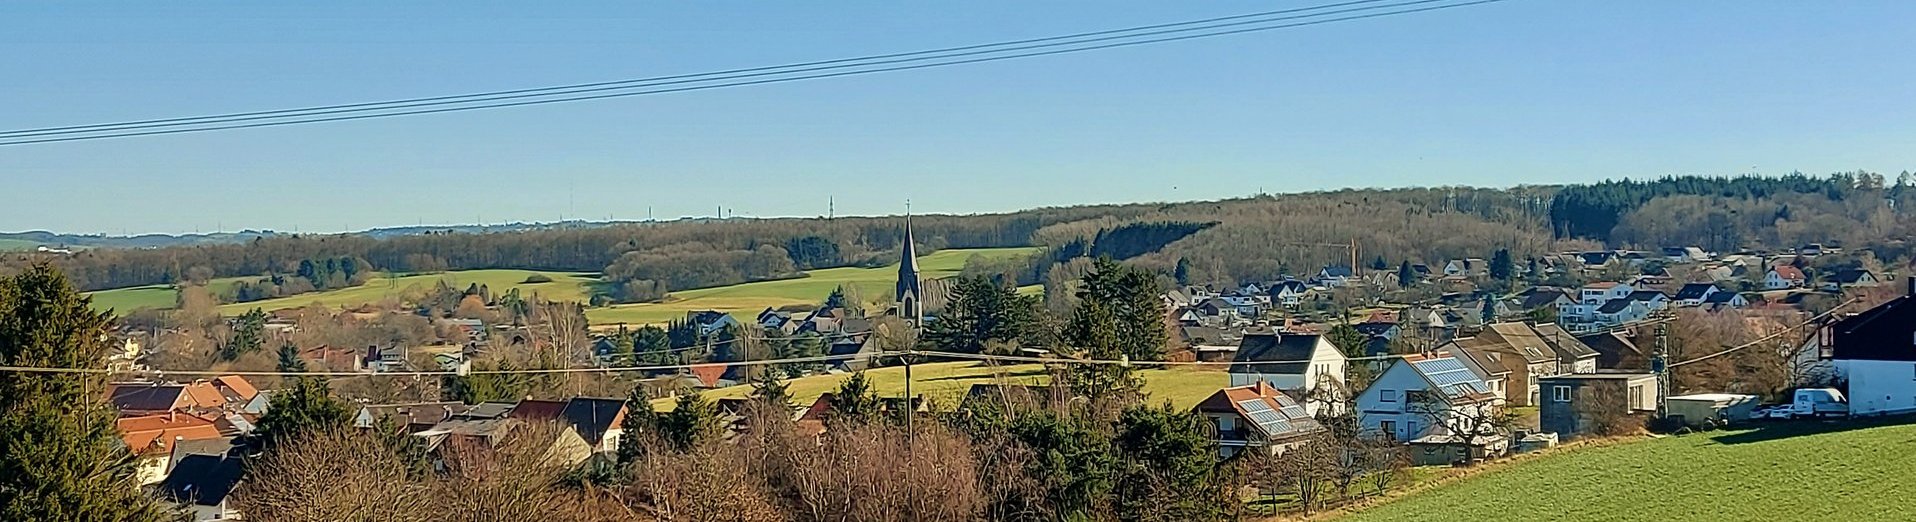 Blick über eine grüne Wiese Richtung Schwarzenholz. Ab Bildmitte sind die ersten Häuser zusehen. Schwarzenholz ist umrahmt von Natur.